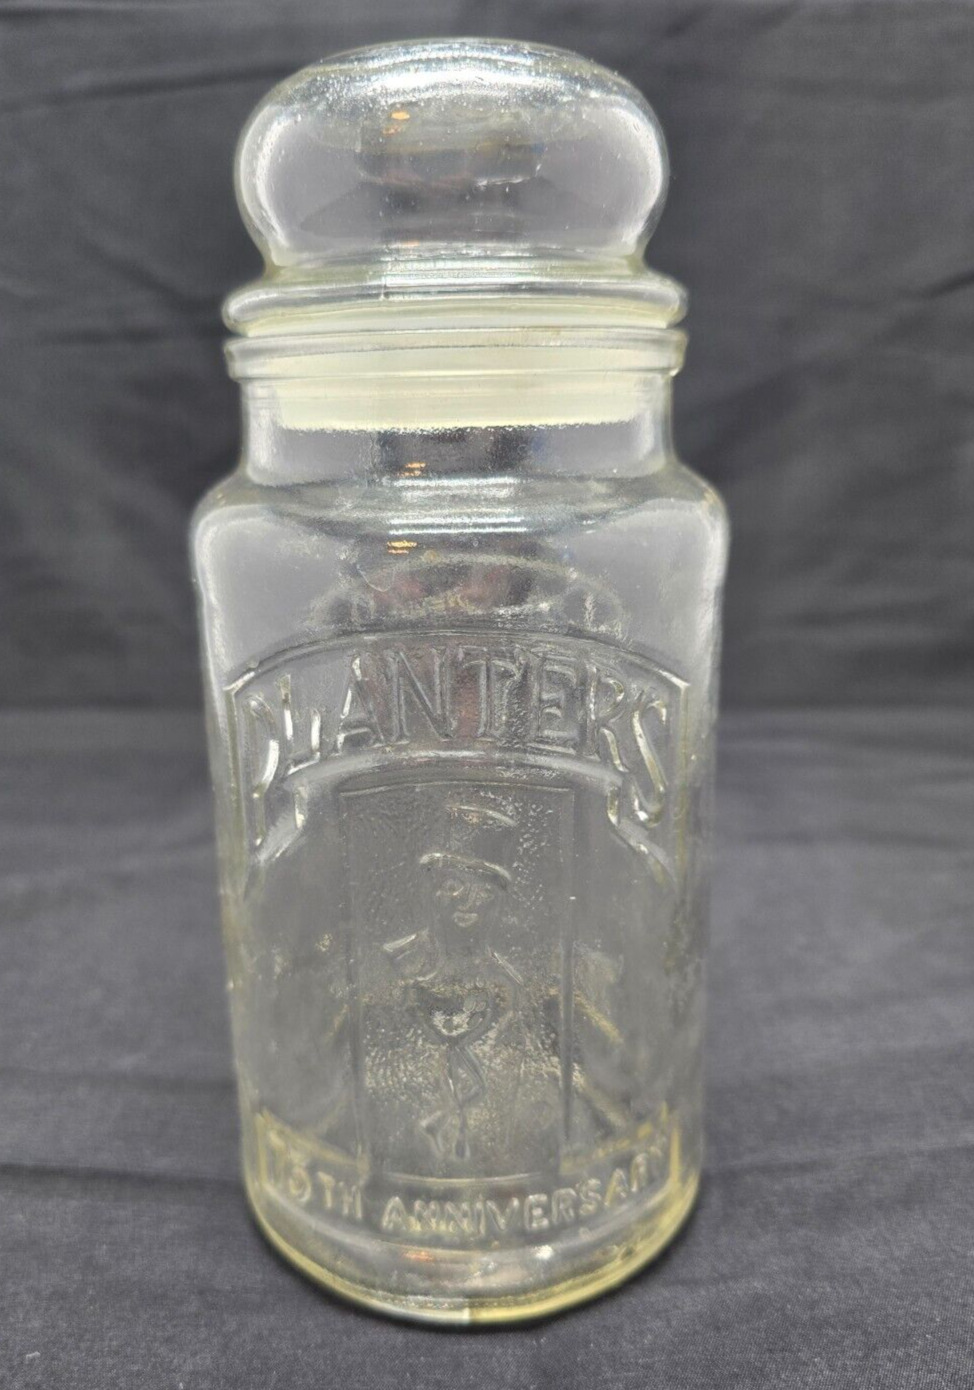 Vintage ~ Planters Peanuts 75th Anniversary Glass Jar w/ Lid ~ 1906-1981